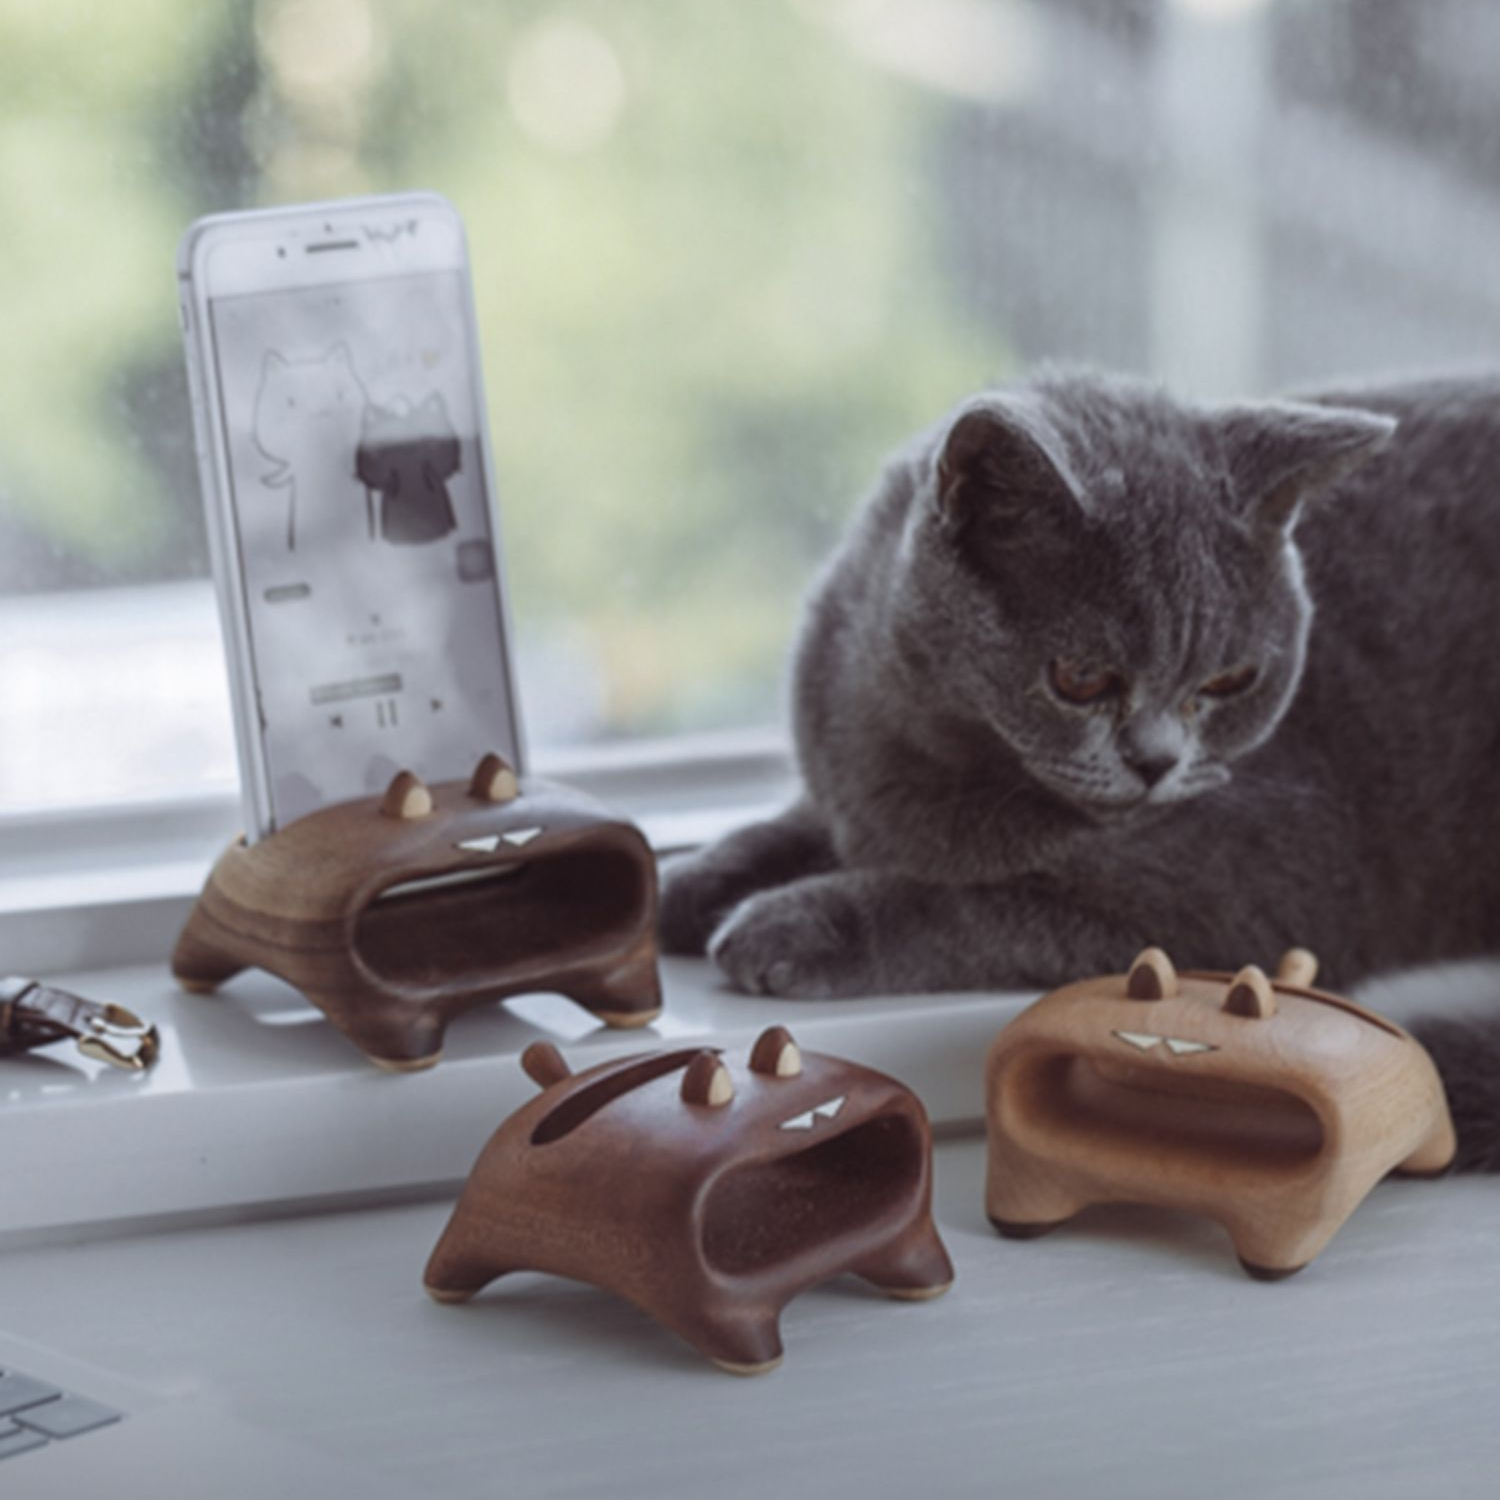 Soporte para teléfono móvil con altavoz de madera y gato ruidoso